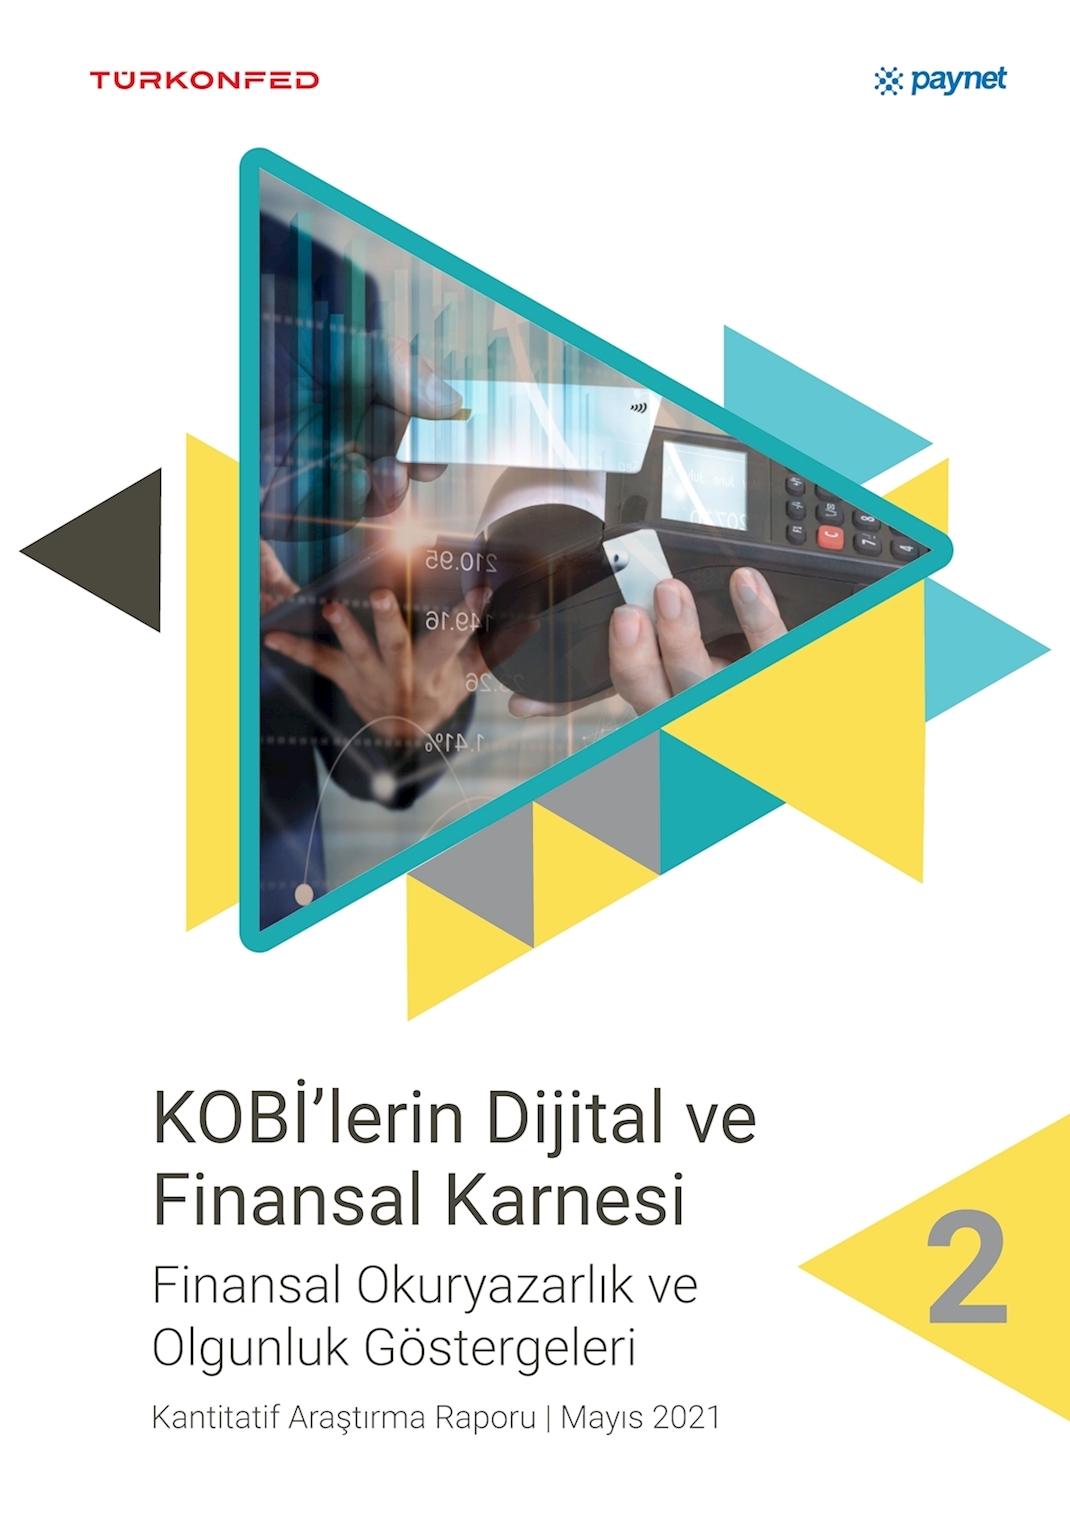 KOBİ'lerin Dijital ve Finansal Karnesi-Finansal Okuryazarlık ve Olgunluk Göstergeleri